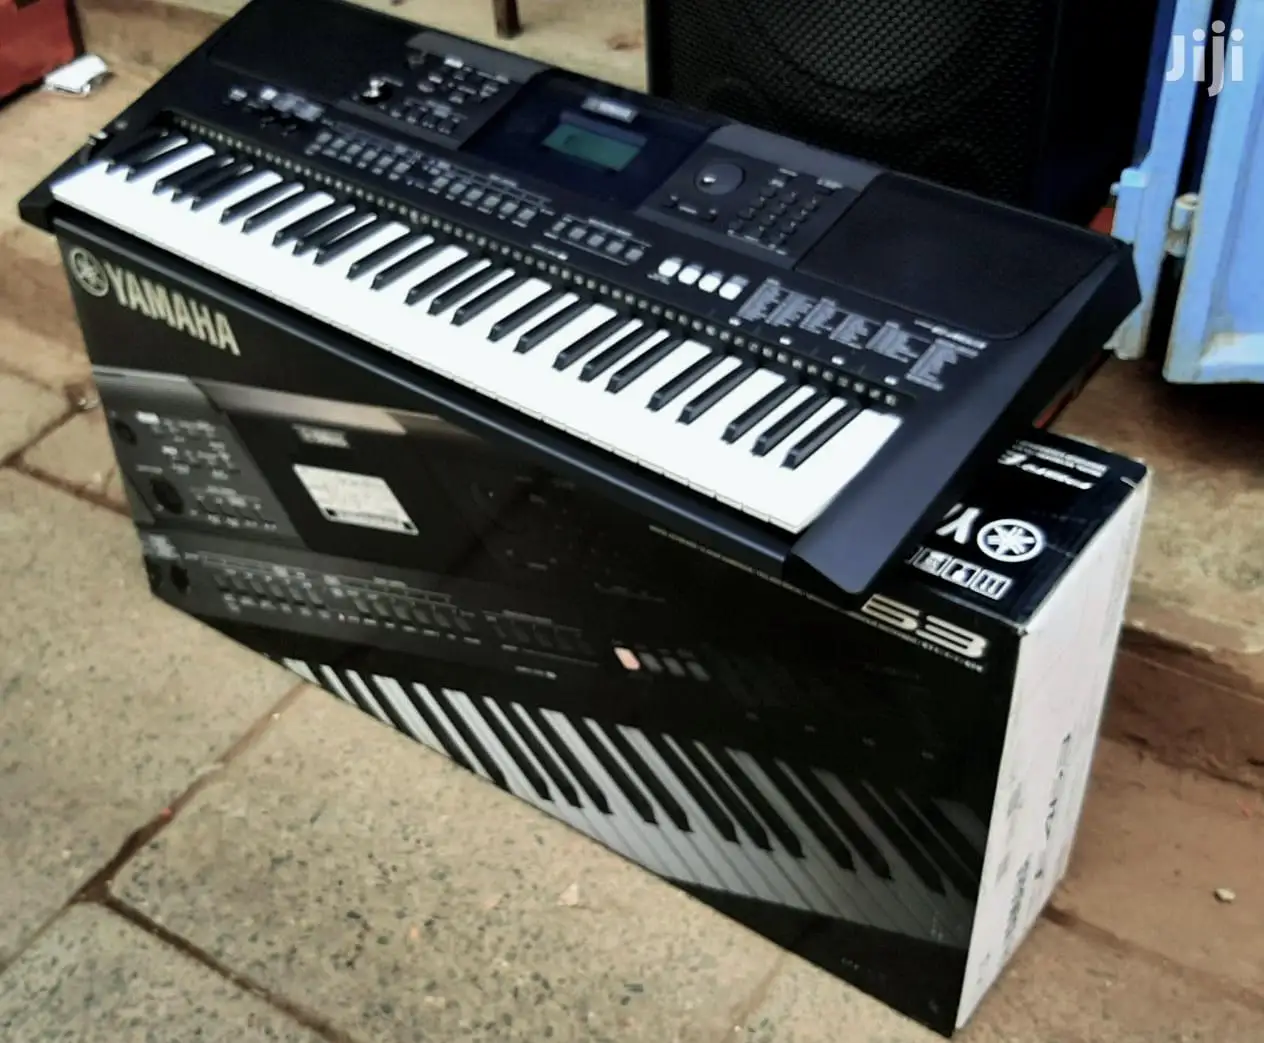 מכירות הקיץ הנחה על יוקרה אותנטית מוטיב XF8 88 מפתח פסנתר, סינתיסייזר מקלדת תחנת עבודה יסודות צרור w - 2